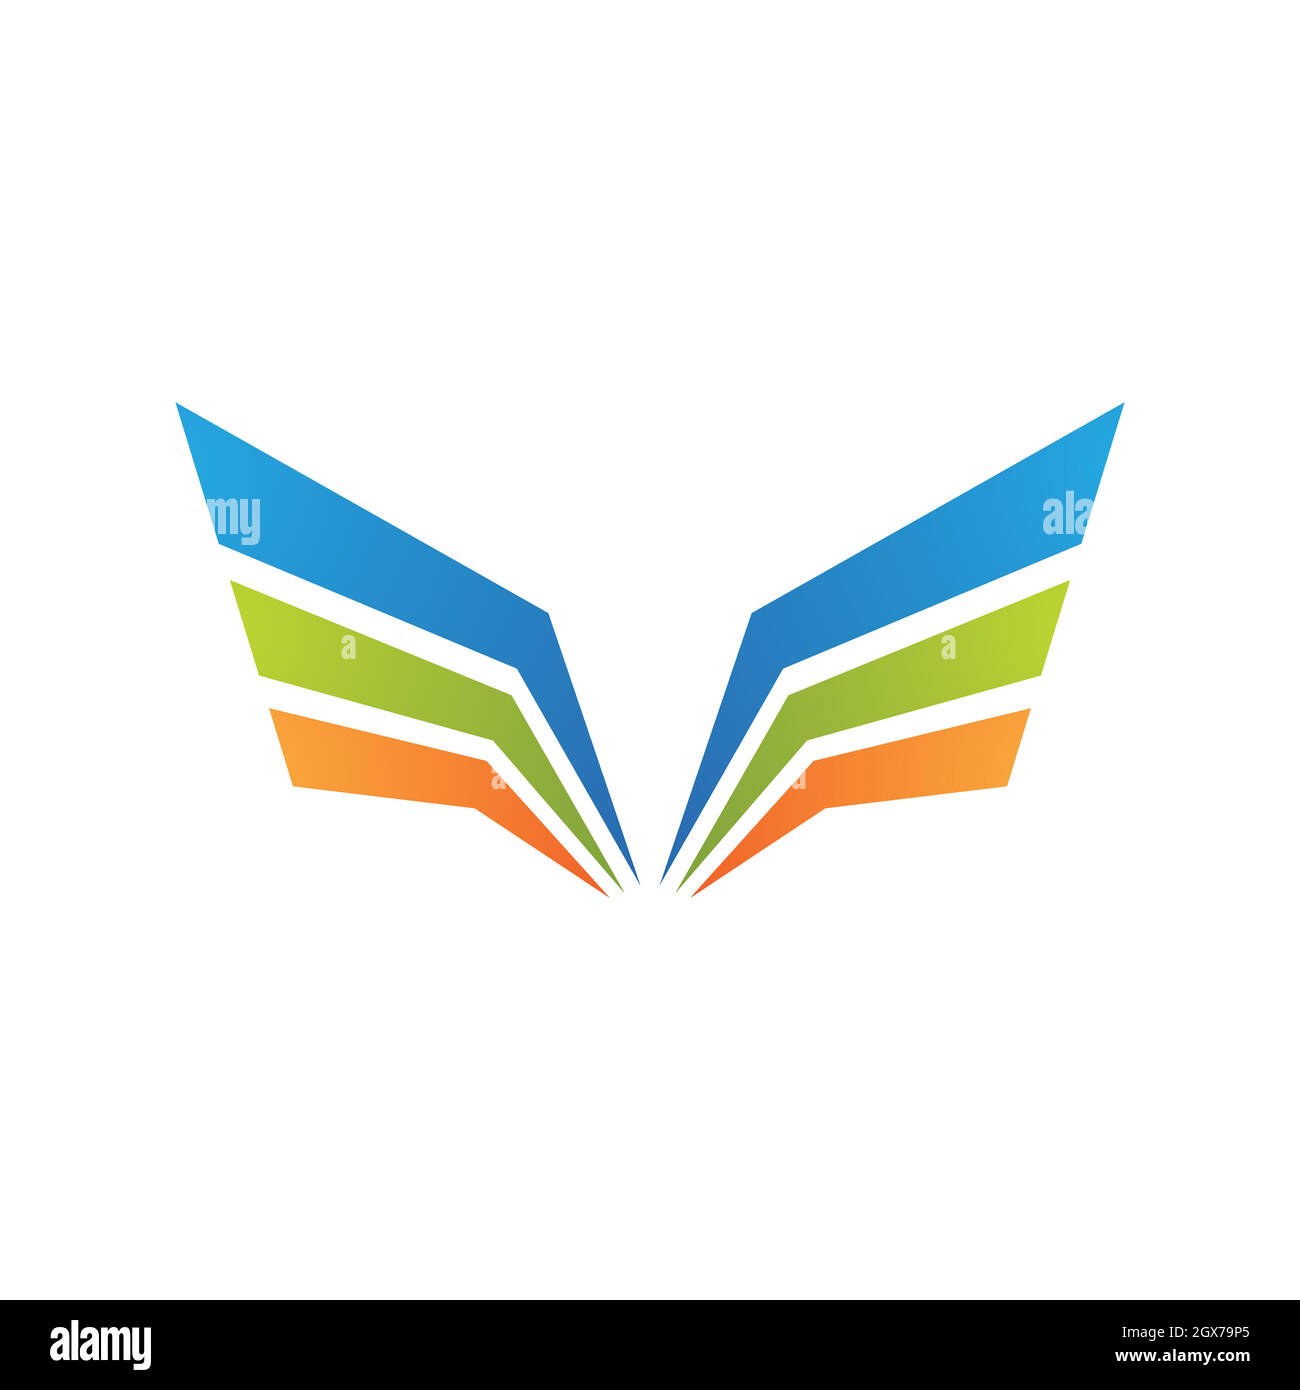 Design vettoriale del modello di logo finanziario Illustrazione Vettoriale